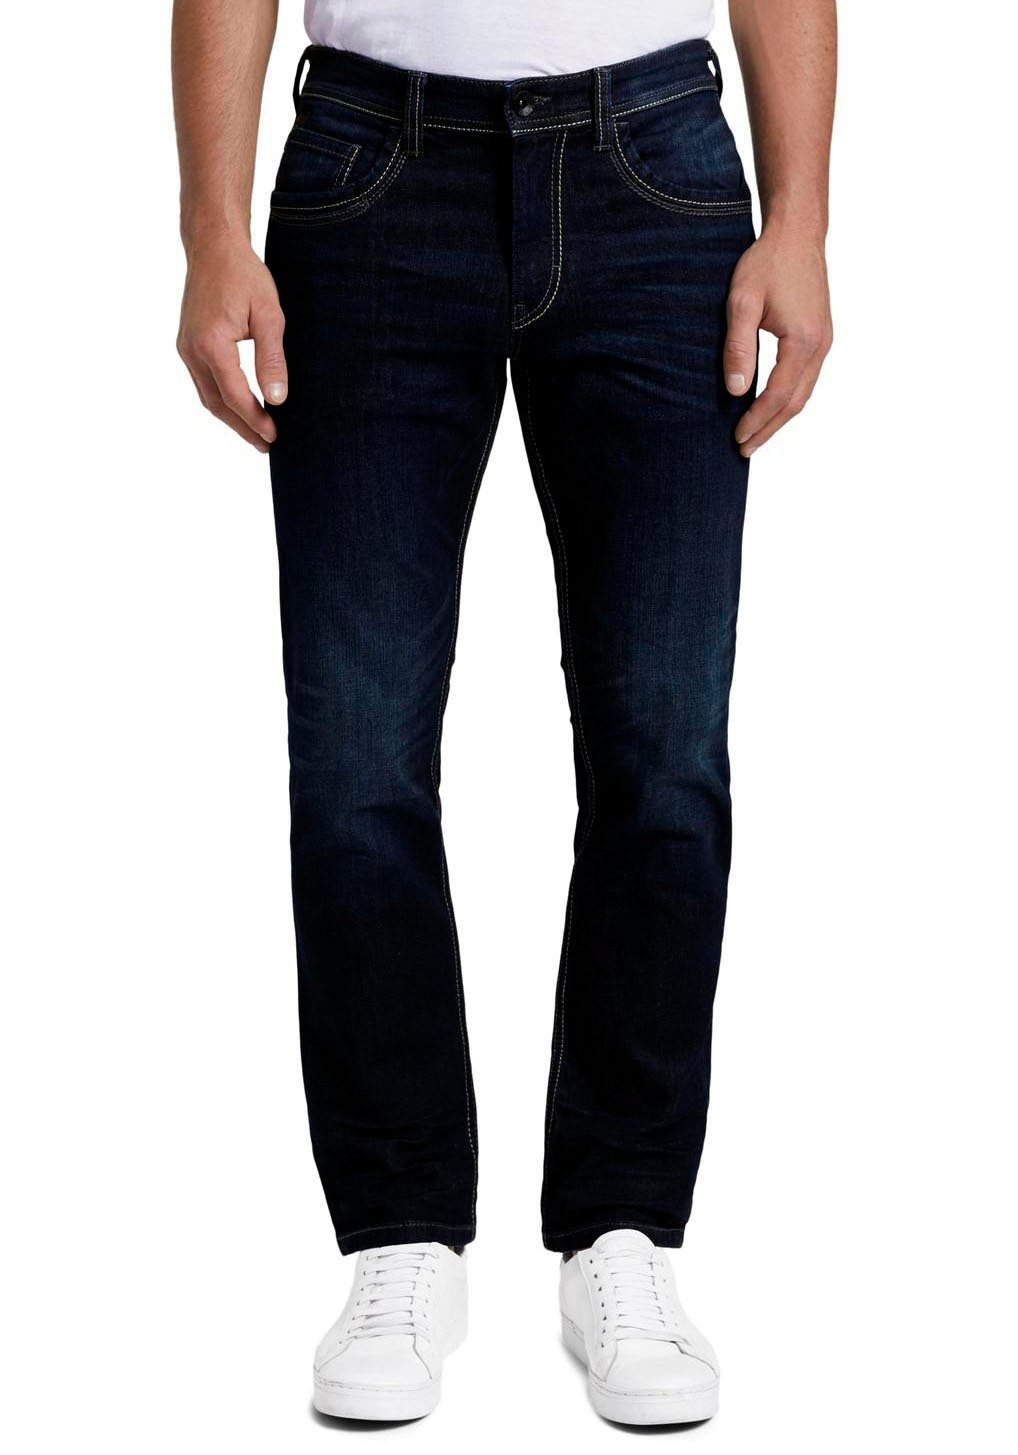 Herren Jeans Mode online kaufen | OTTO